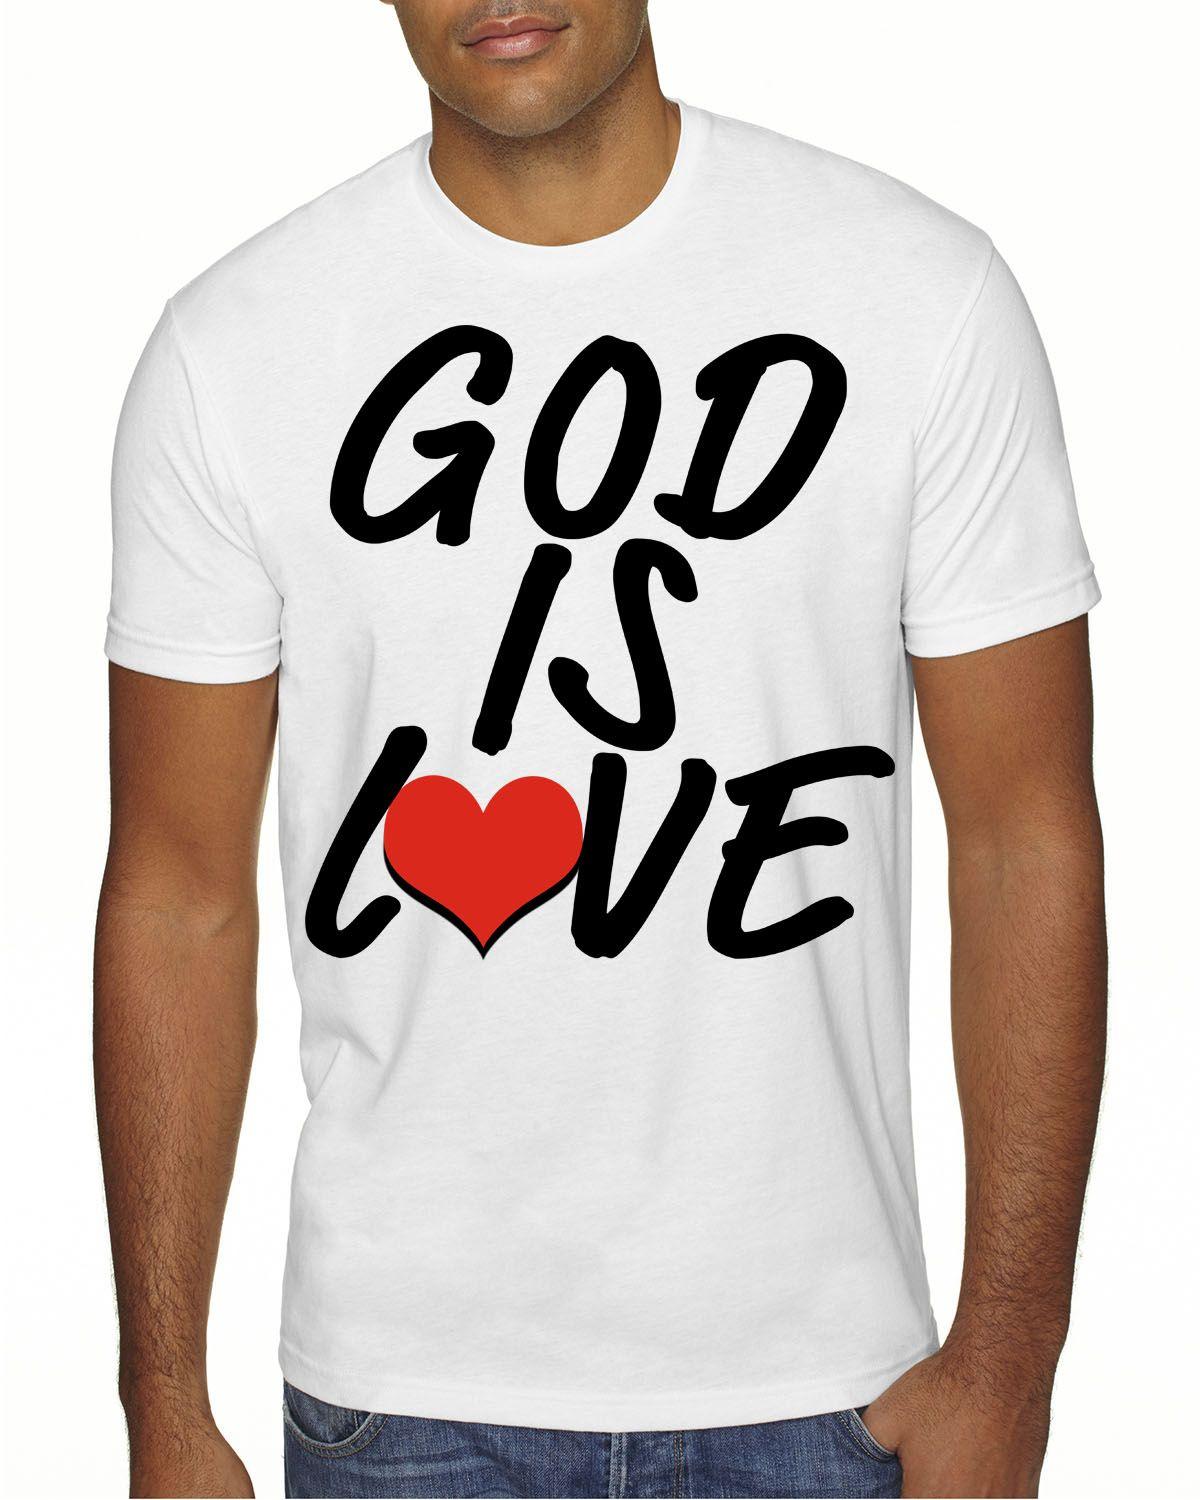 Tee Logo - God Is Love Logo Men White Tee